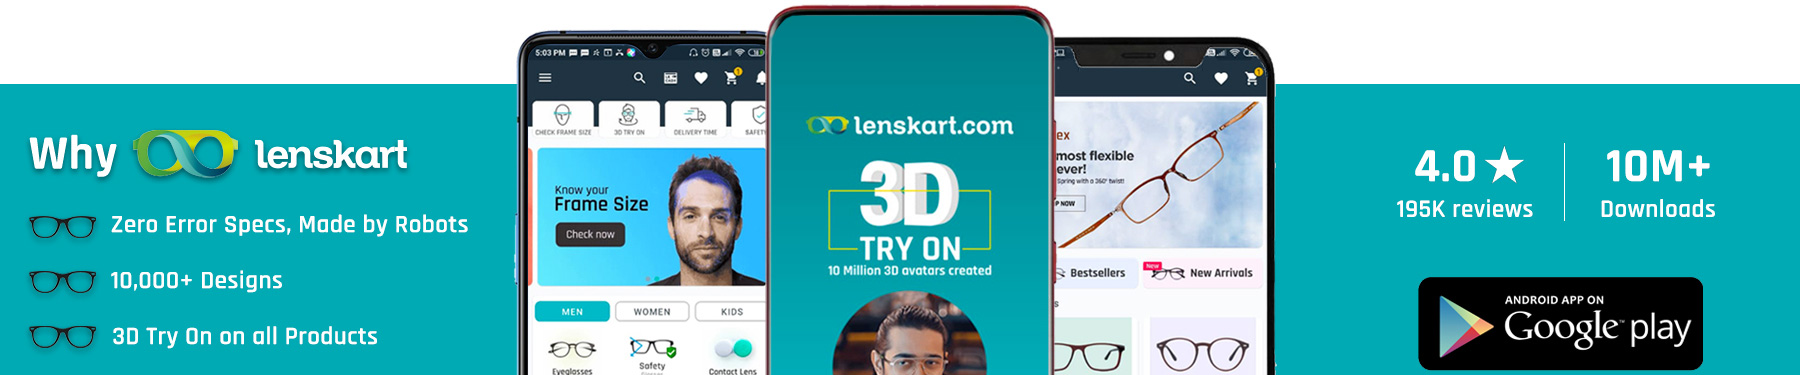 Lenskart Mobile App